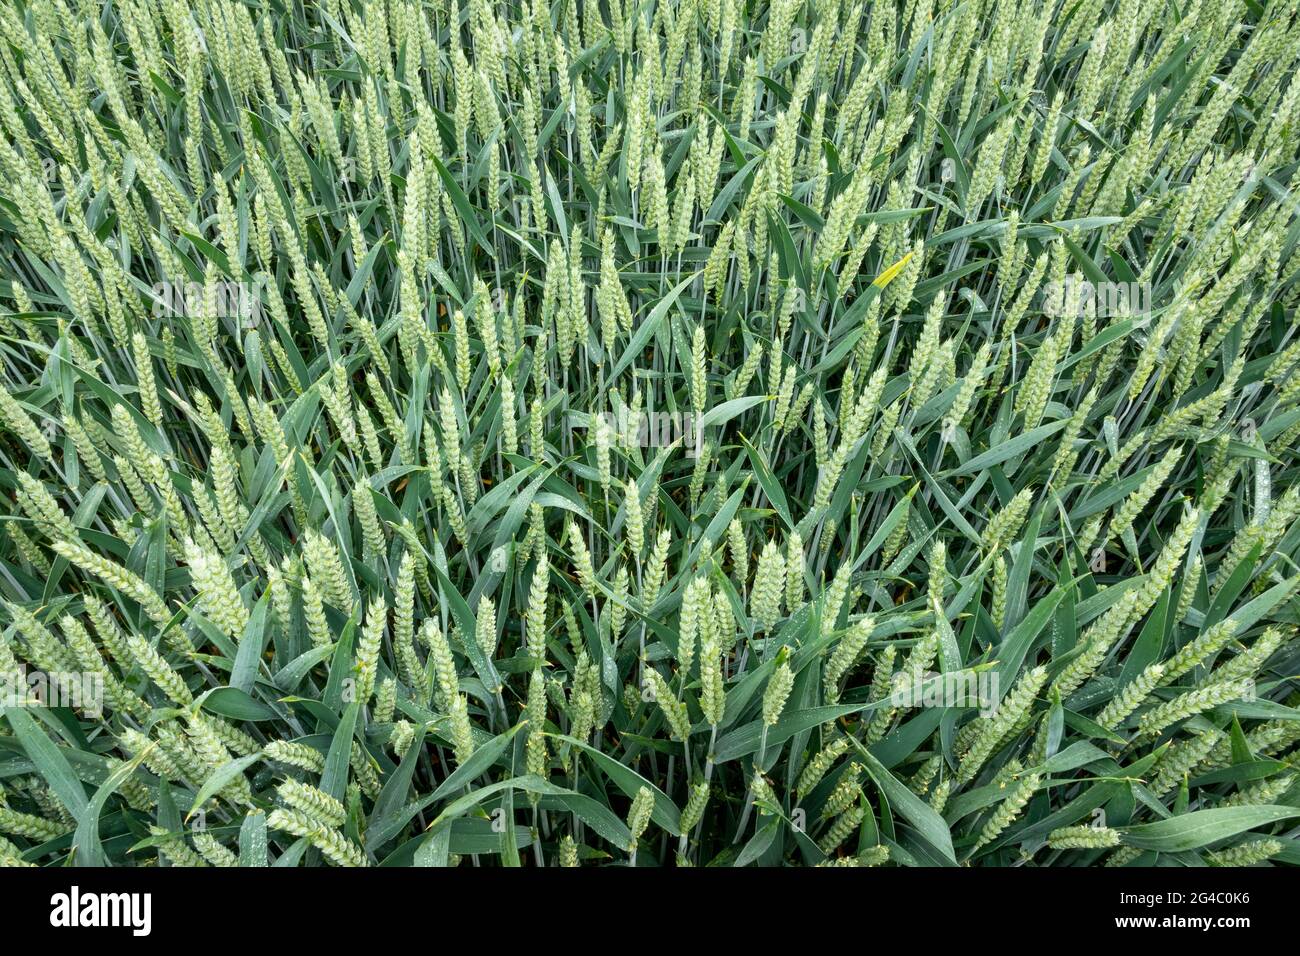 Zone détaillée d'une jeune récolte de blé vert dans un champ Banque D'Images